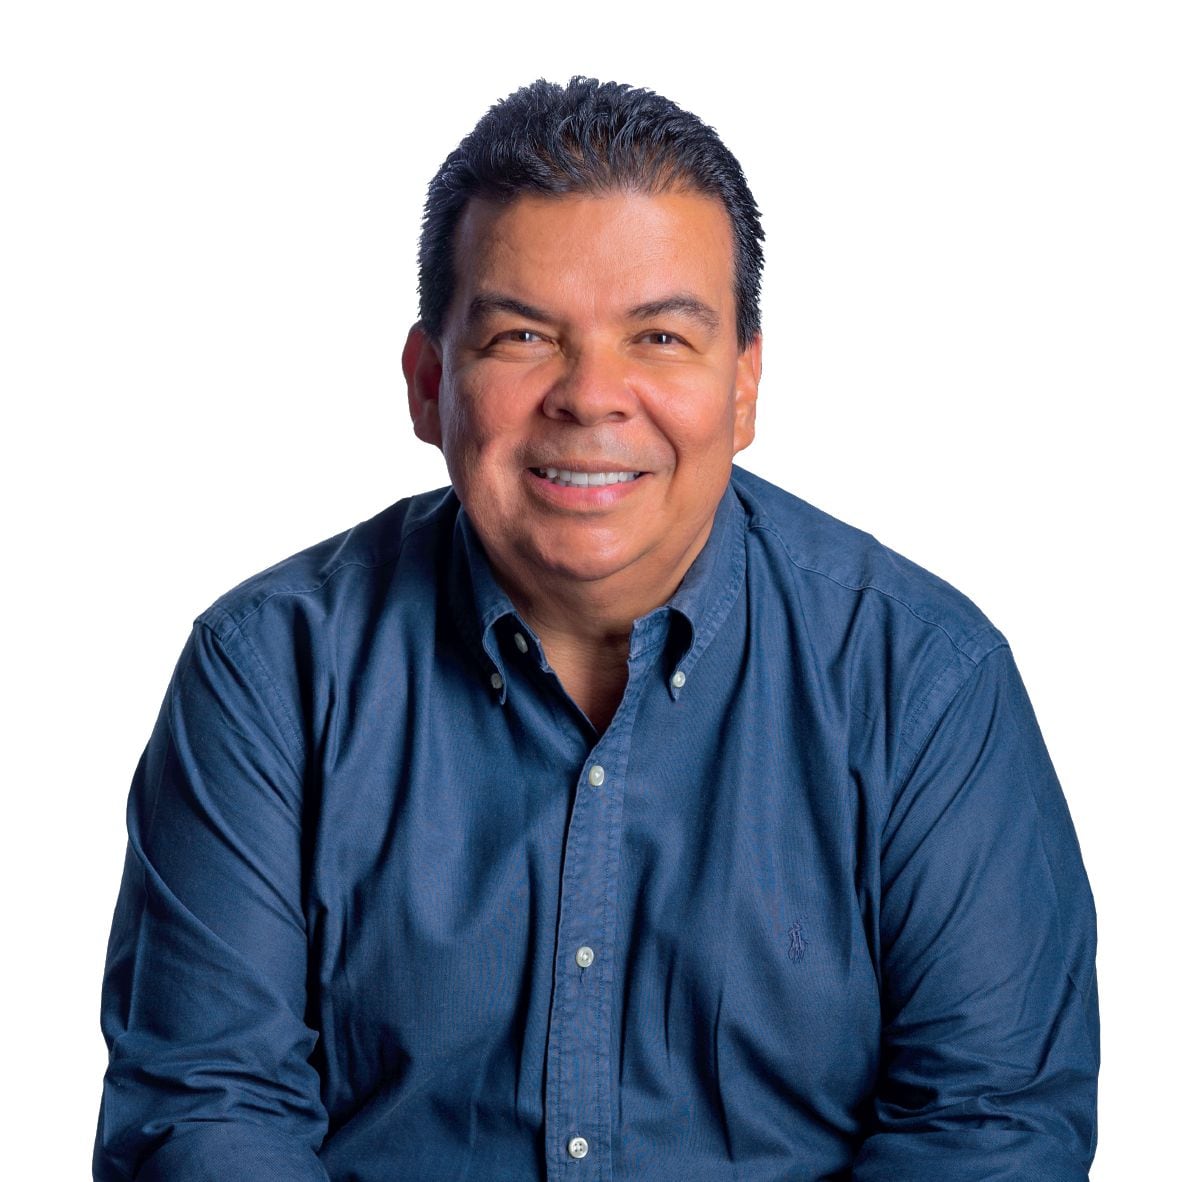 Roberto Ortiz, concejal y candidato a la Alcaldía de Cali.